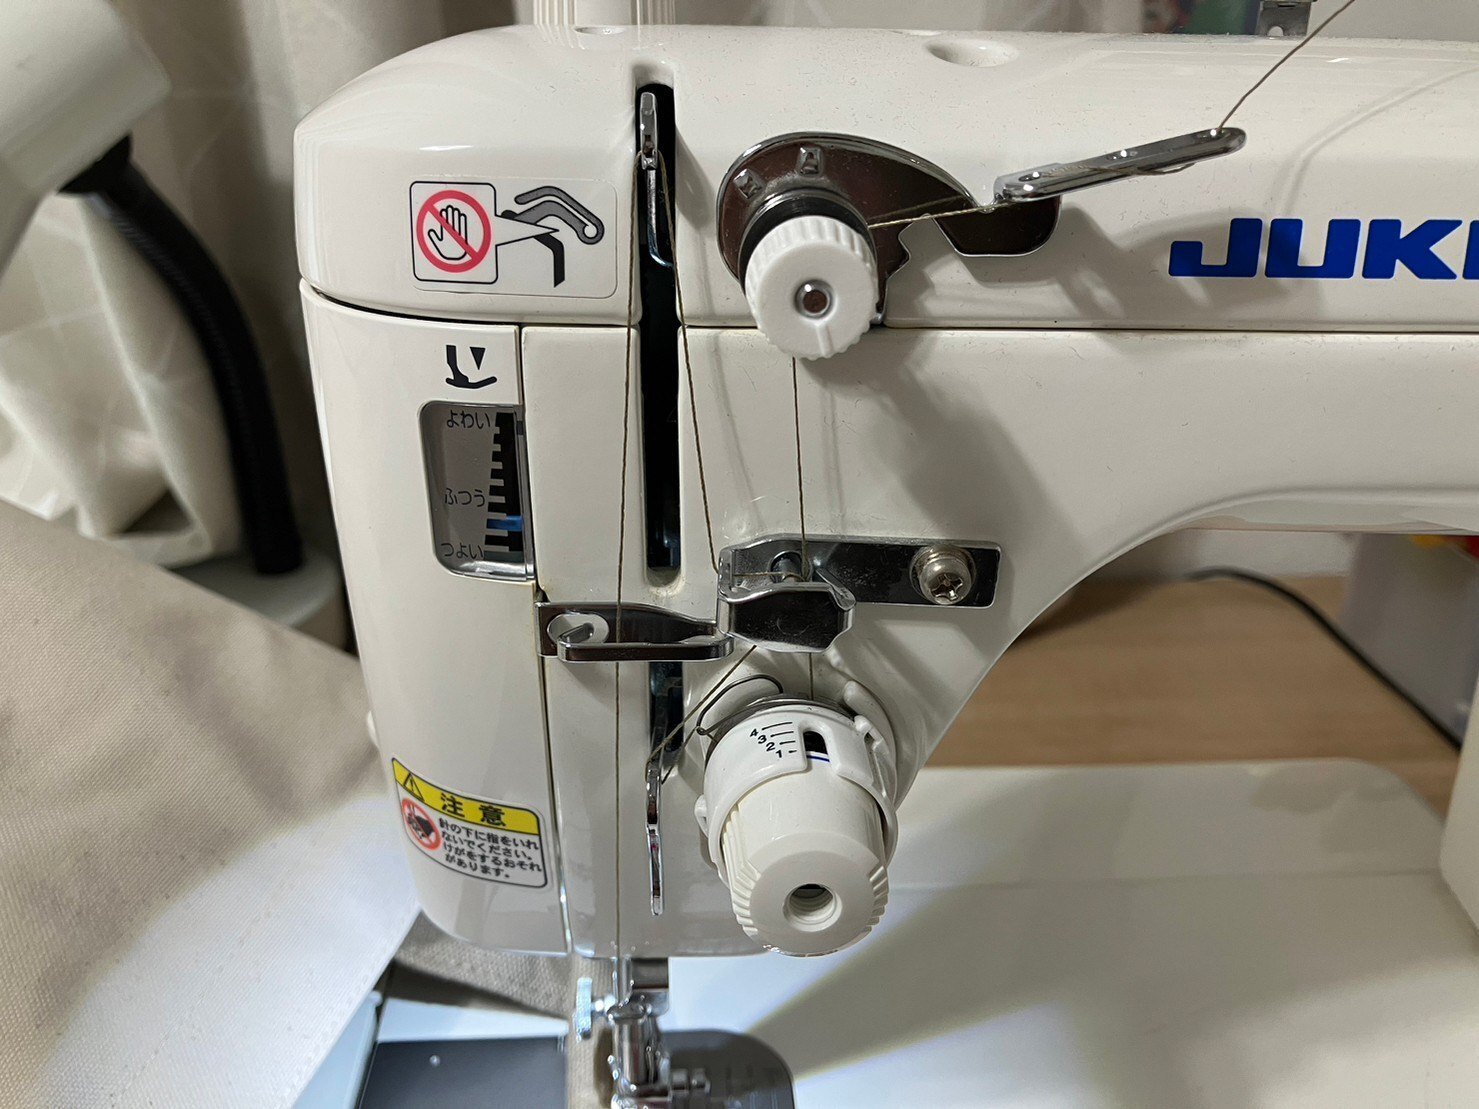 ミシンの練習】JUKI職業用ミシン「SL-700EX」で厚物縫い～9.5号